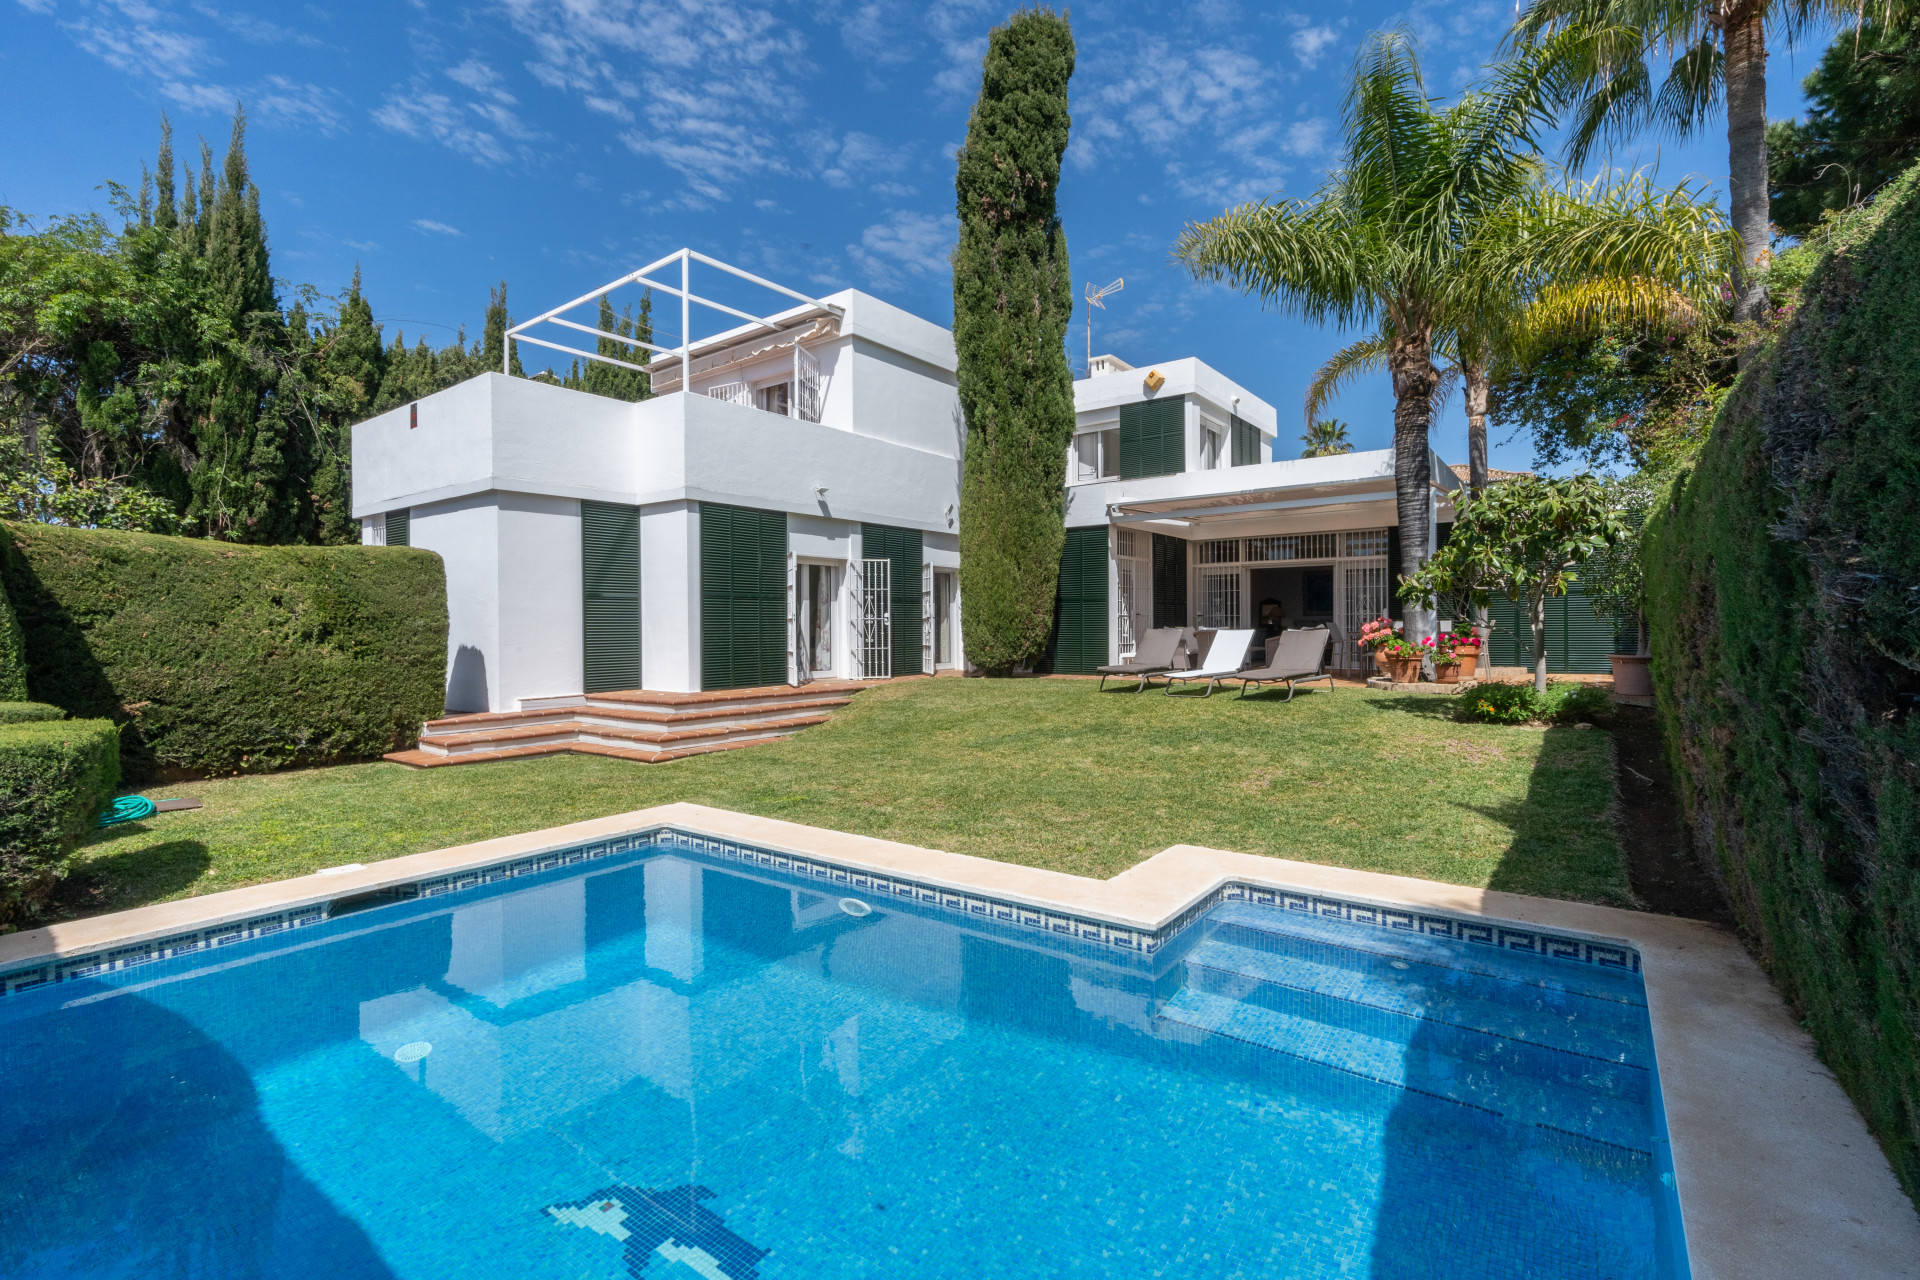 Fabulous 5 bedroom detached villa located in the exclusive area of El Presidente, Estepona